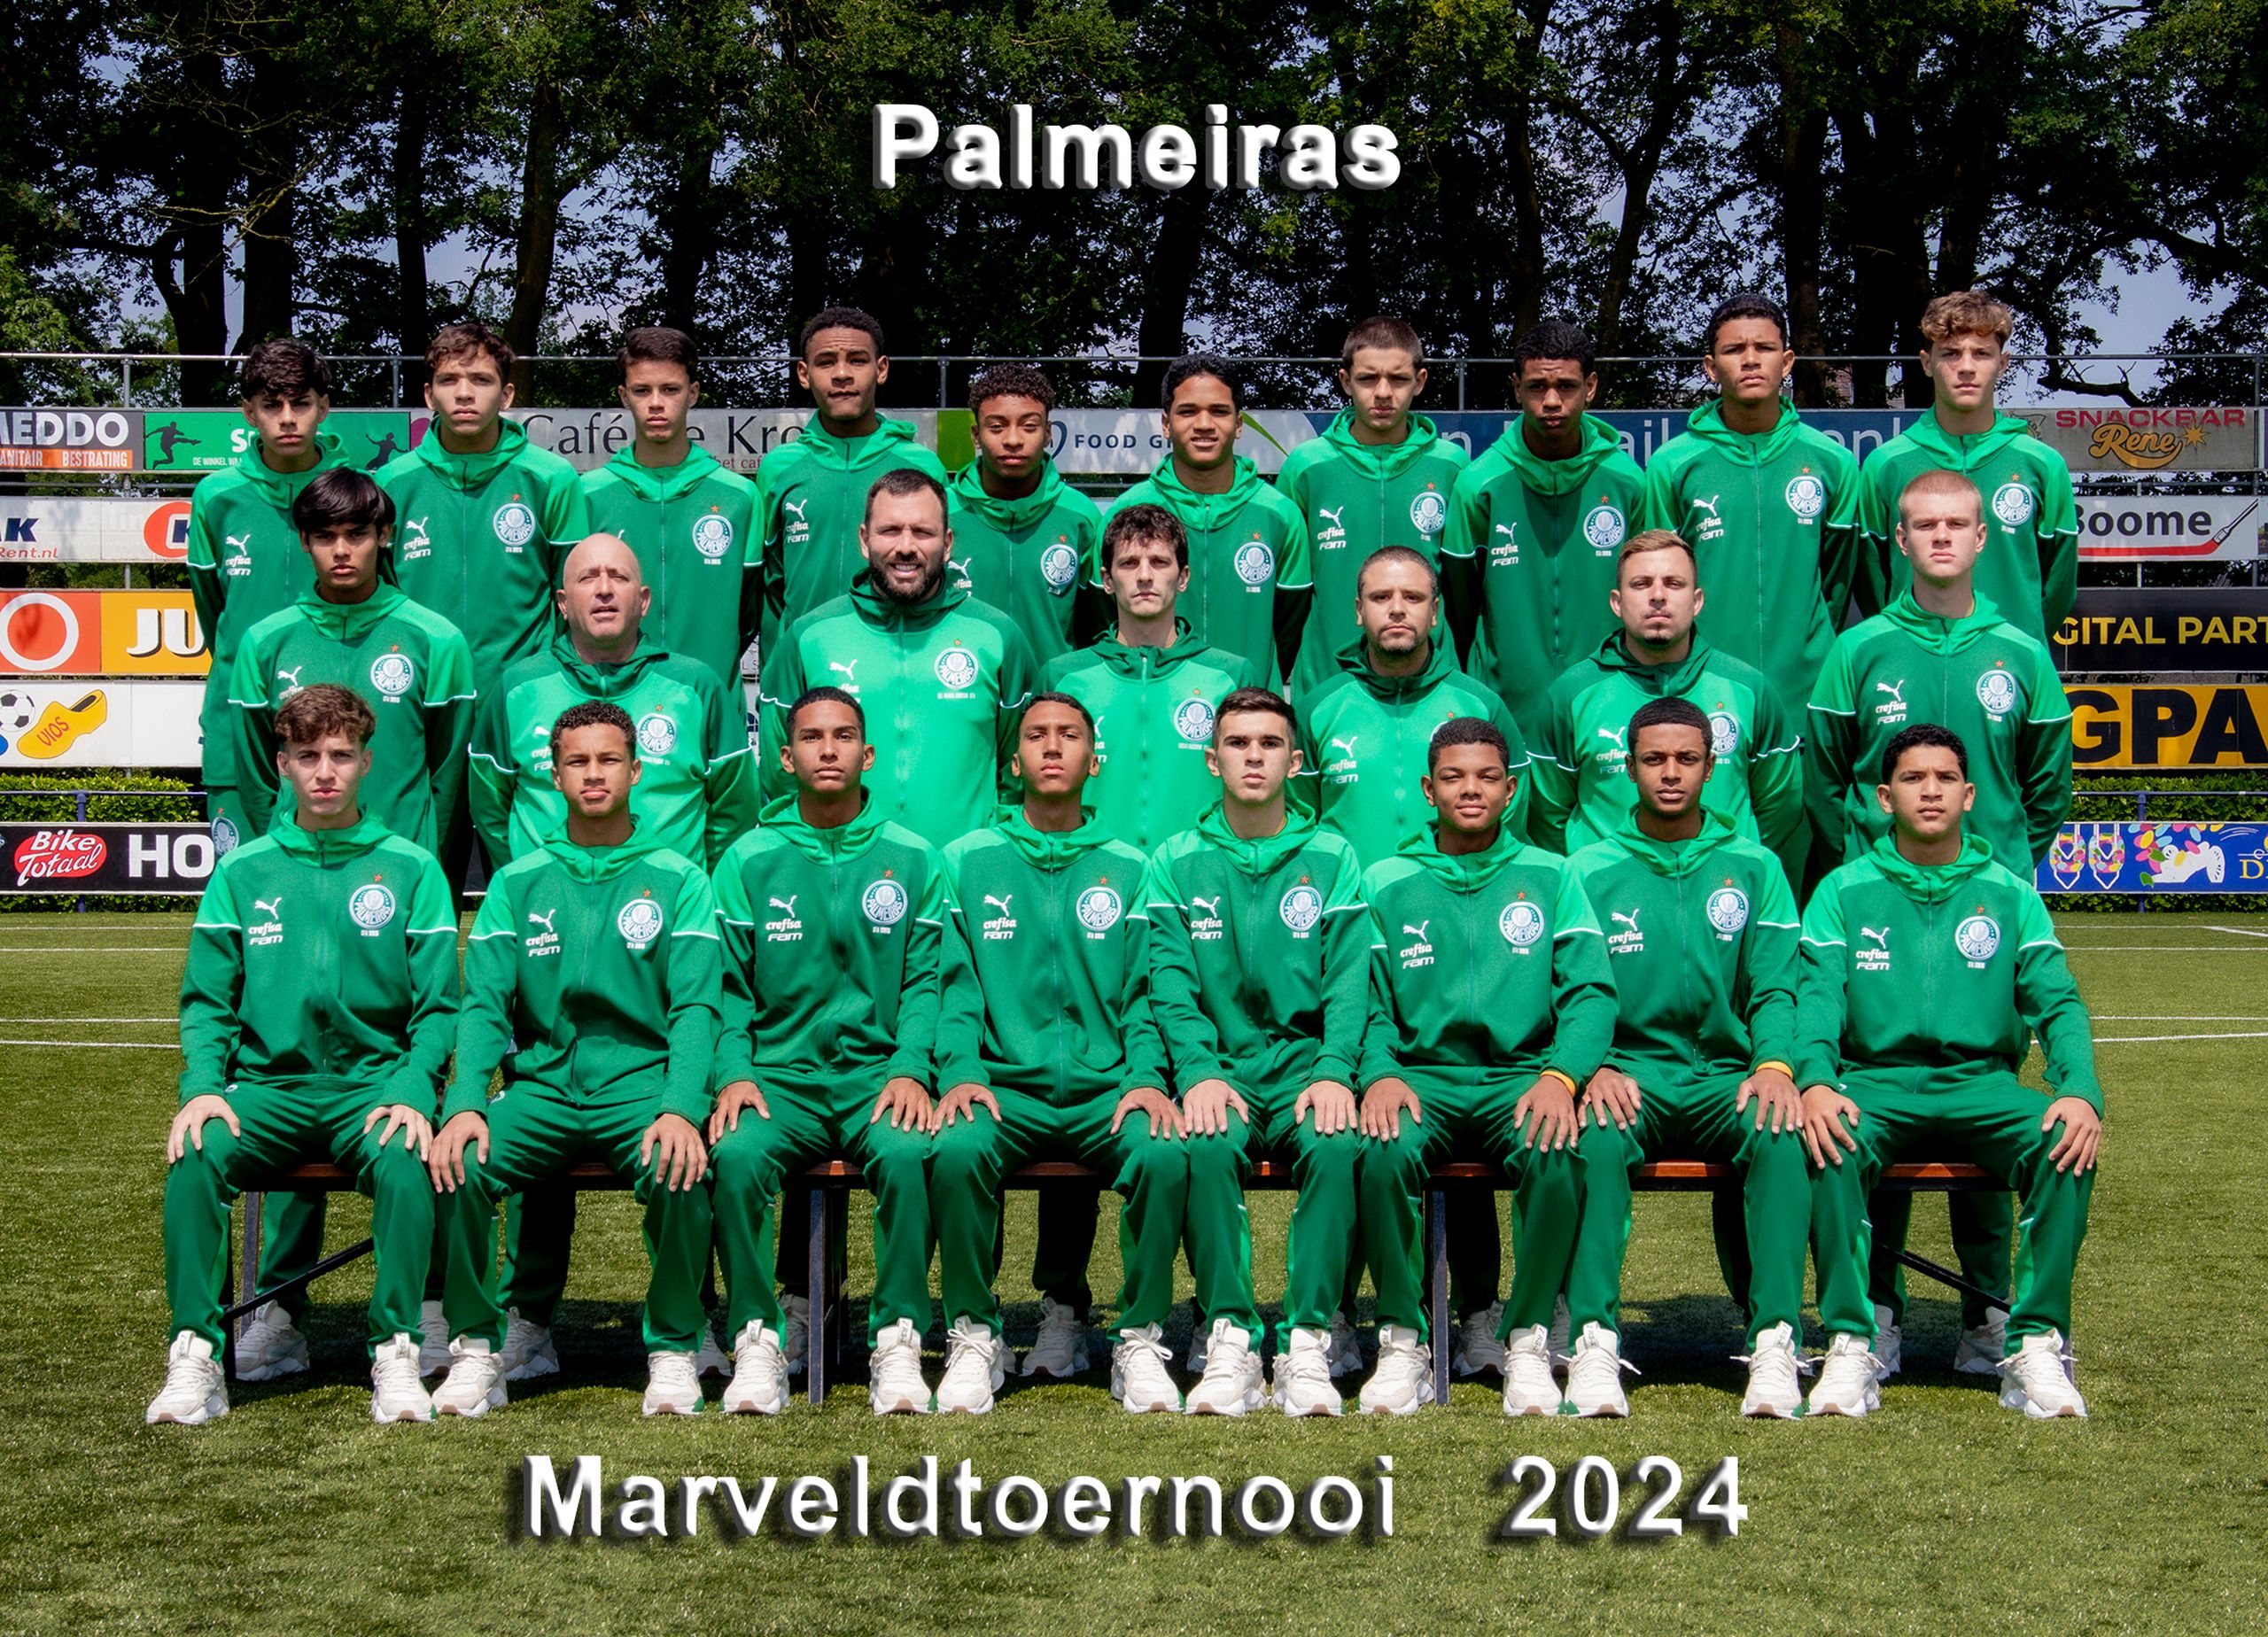 Marveld Tournament 2024 - Team Palmeiras